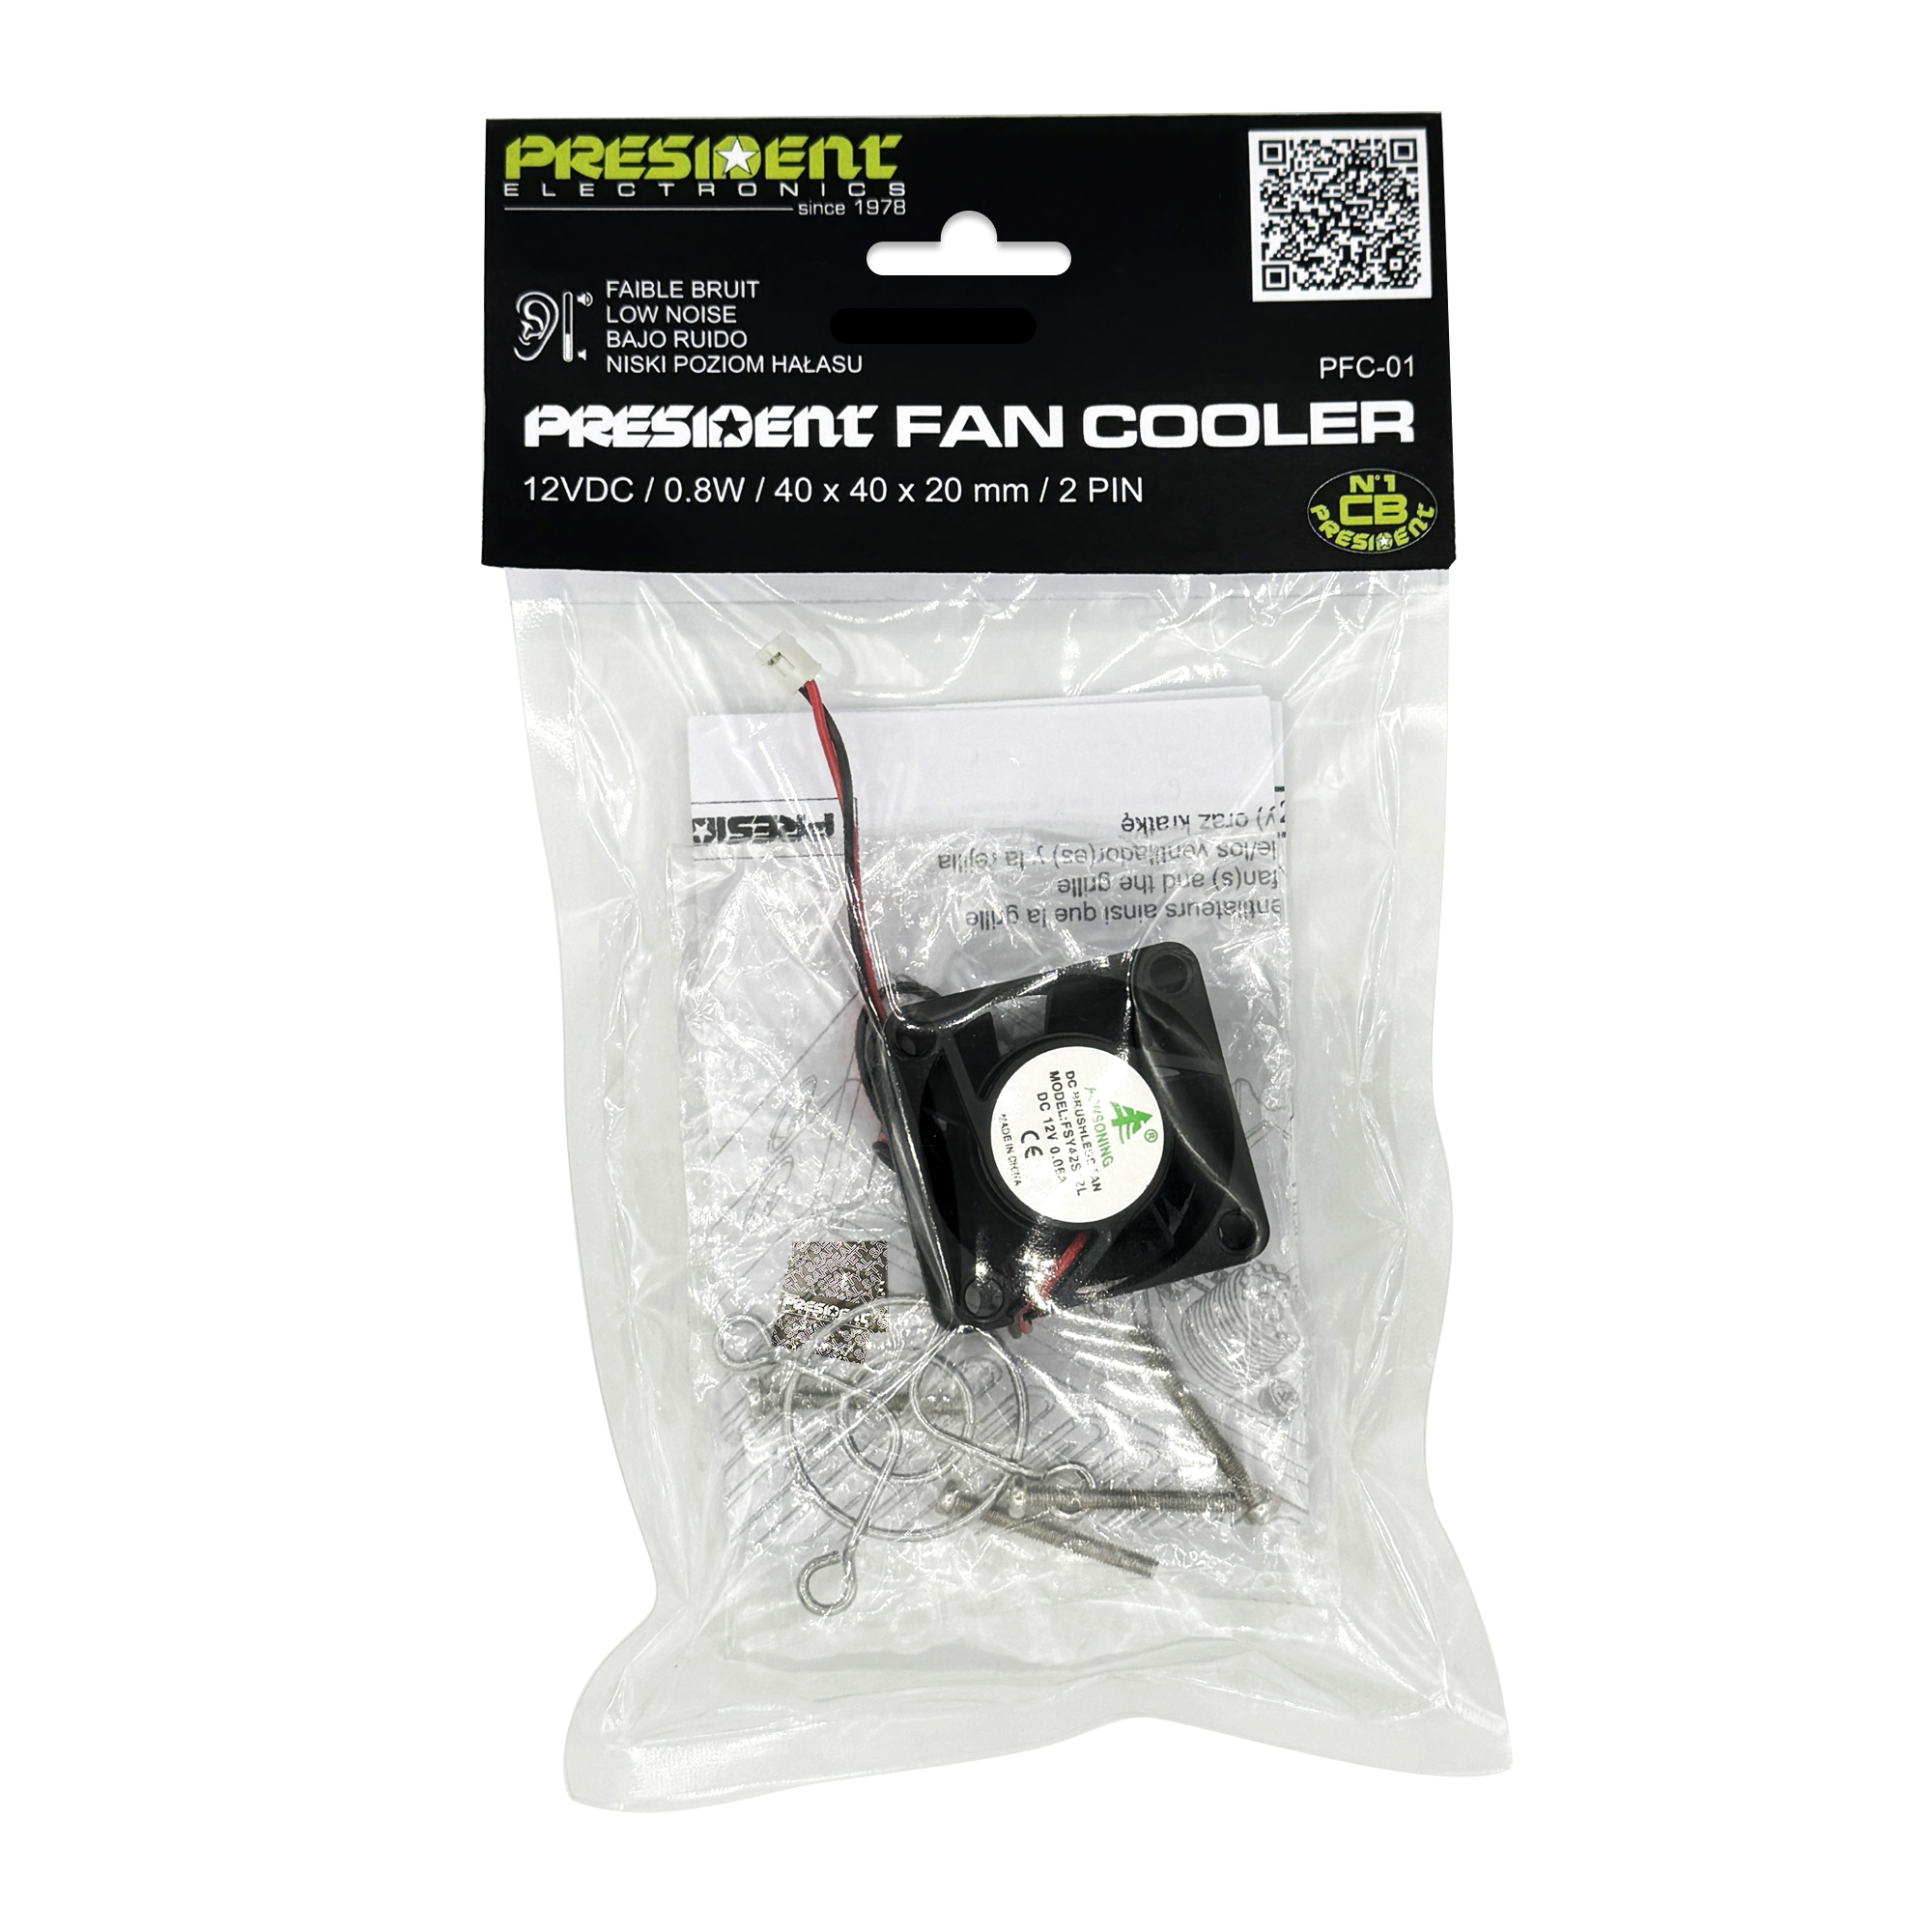 President Fan Cooler kit